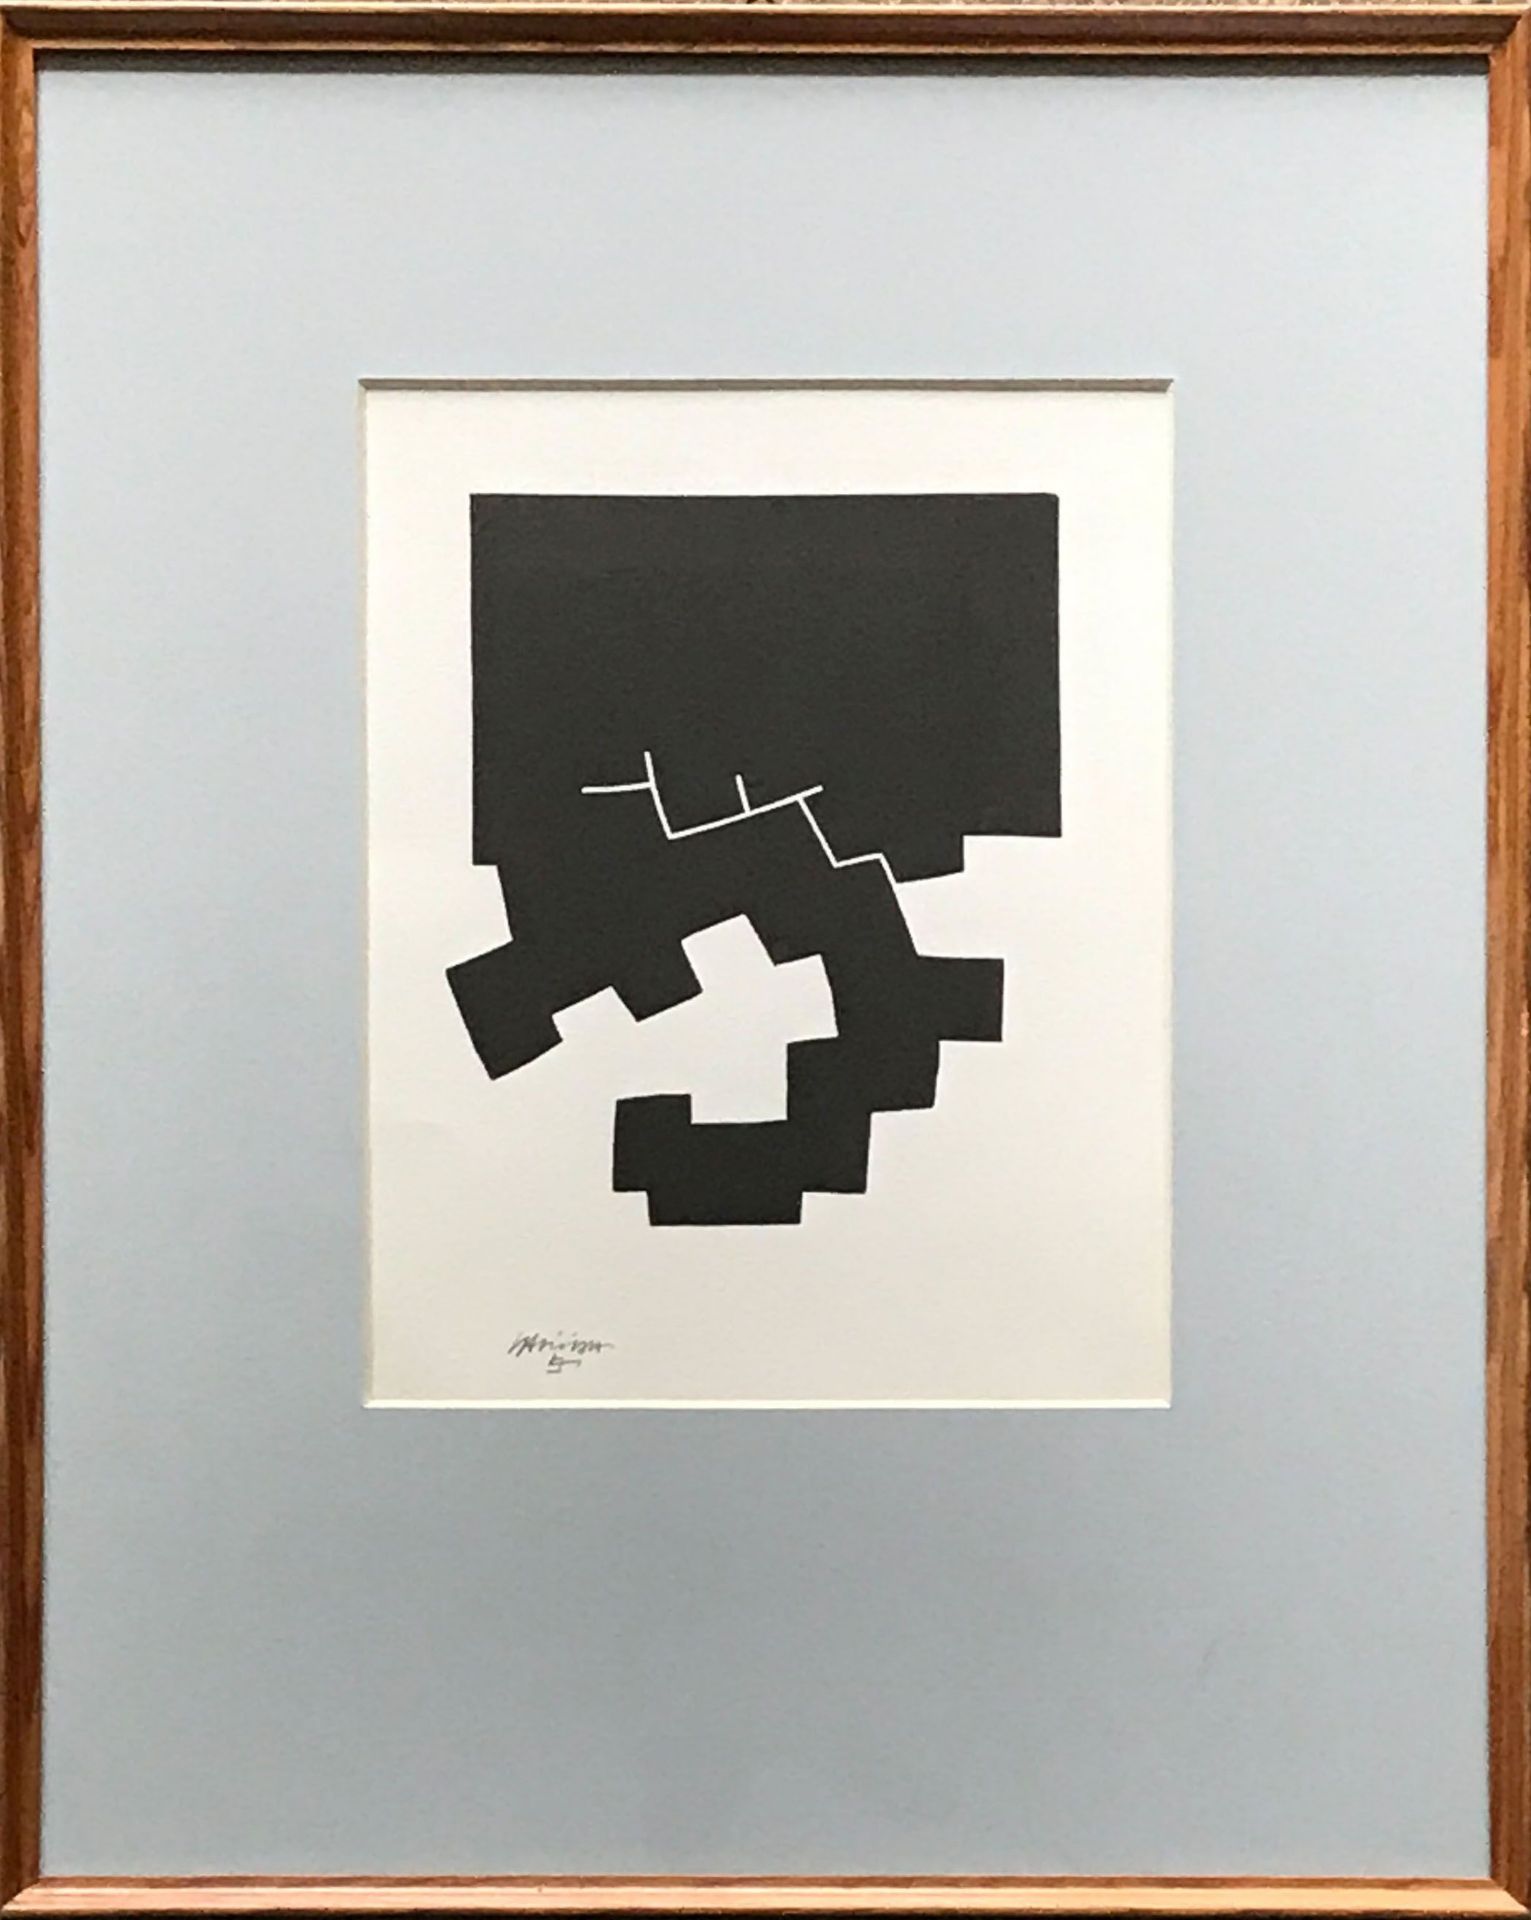 Eduardo Chillida (1924 San Sebastián - 2002 ebd.), Serigraphie, signiert, 18 x 14,5 cm, guter